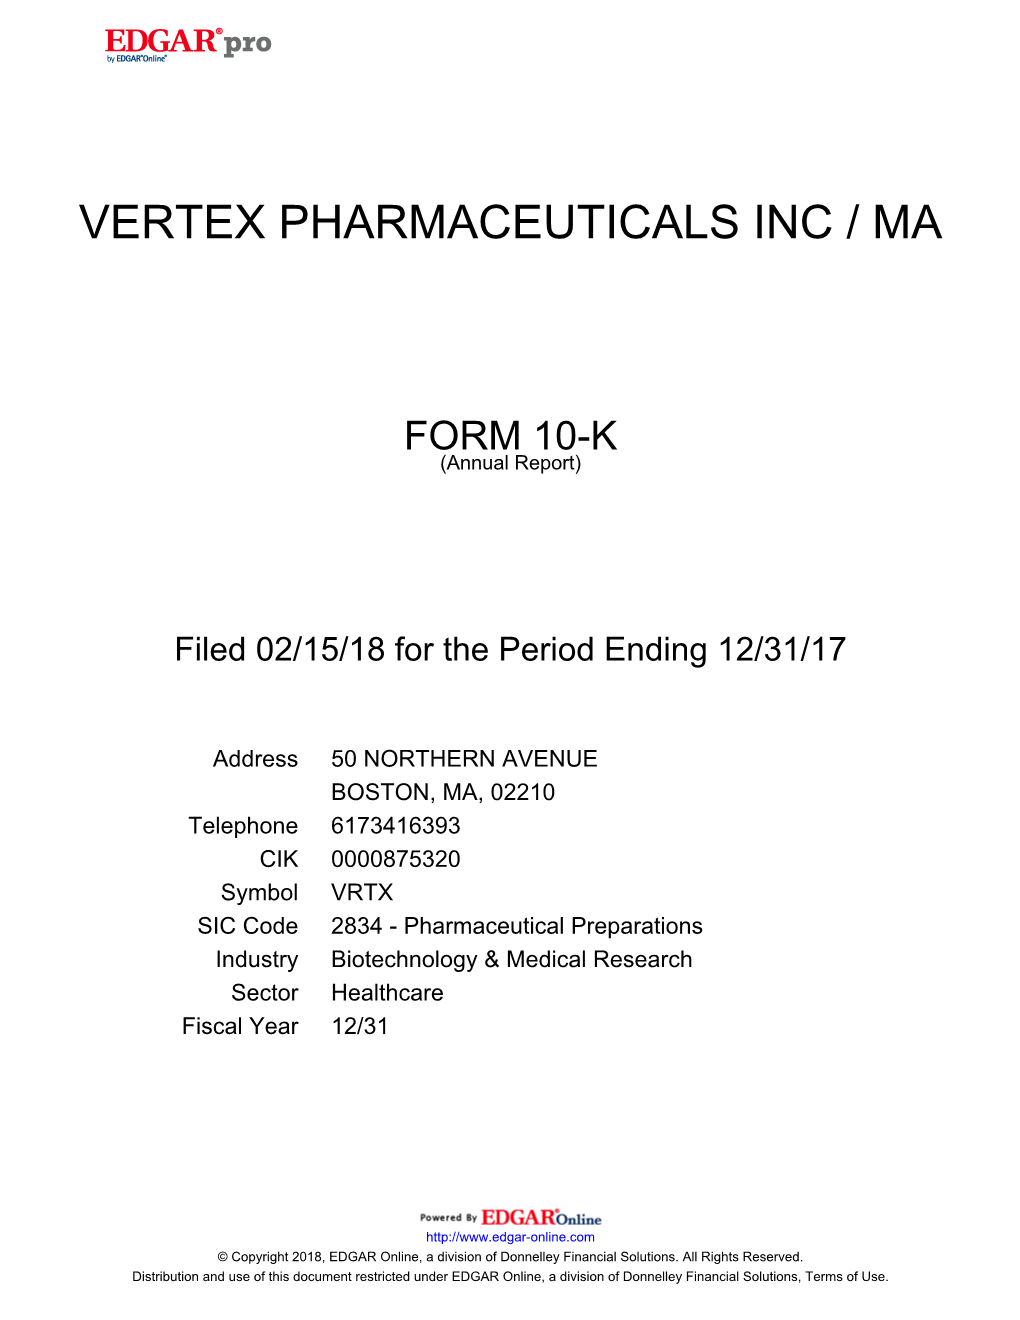 Vertex Pharmaceuticals Inc / Ma